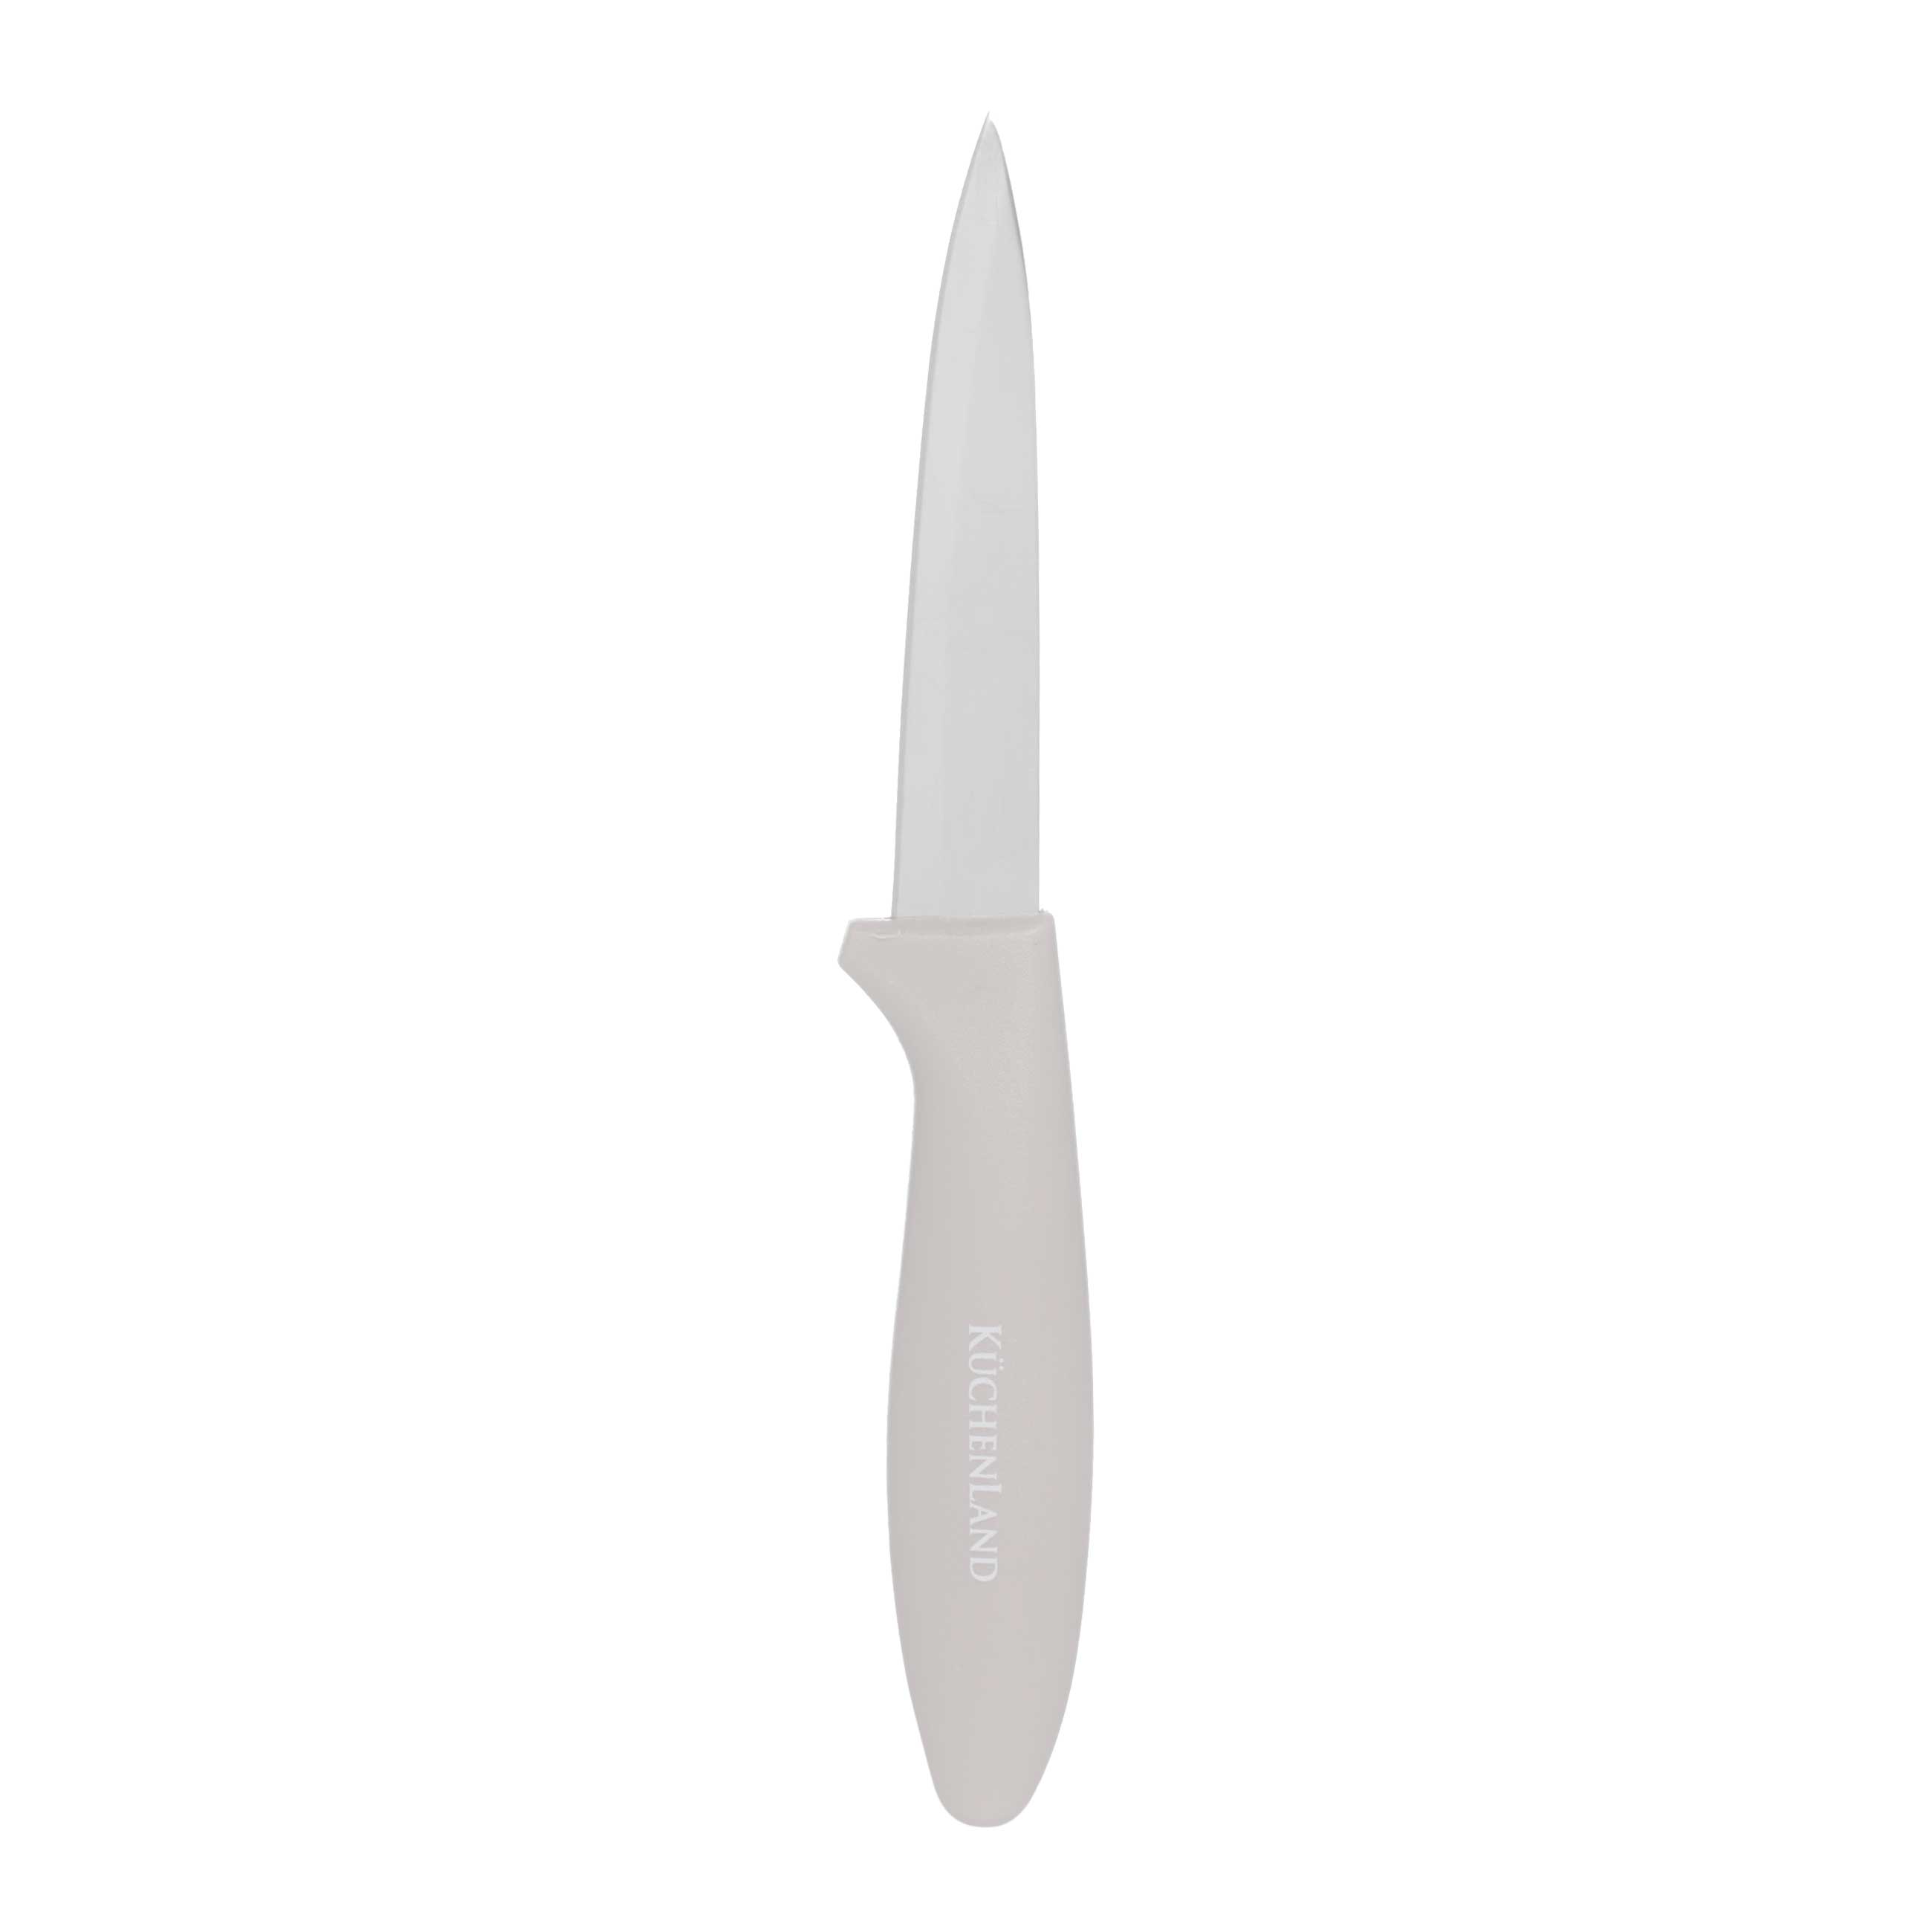 Нож Kuchenland Supreme для чистки овощей, 9 см, сталь/пластик, серо-коричневый